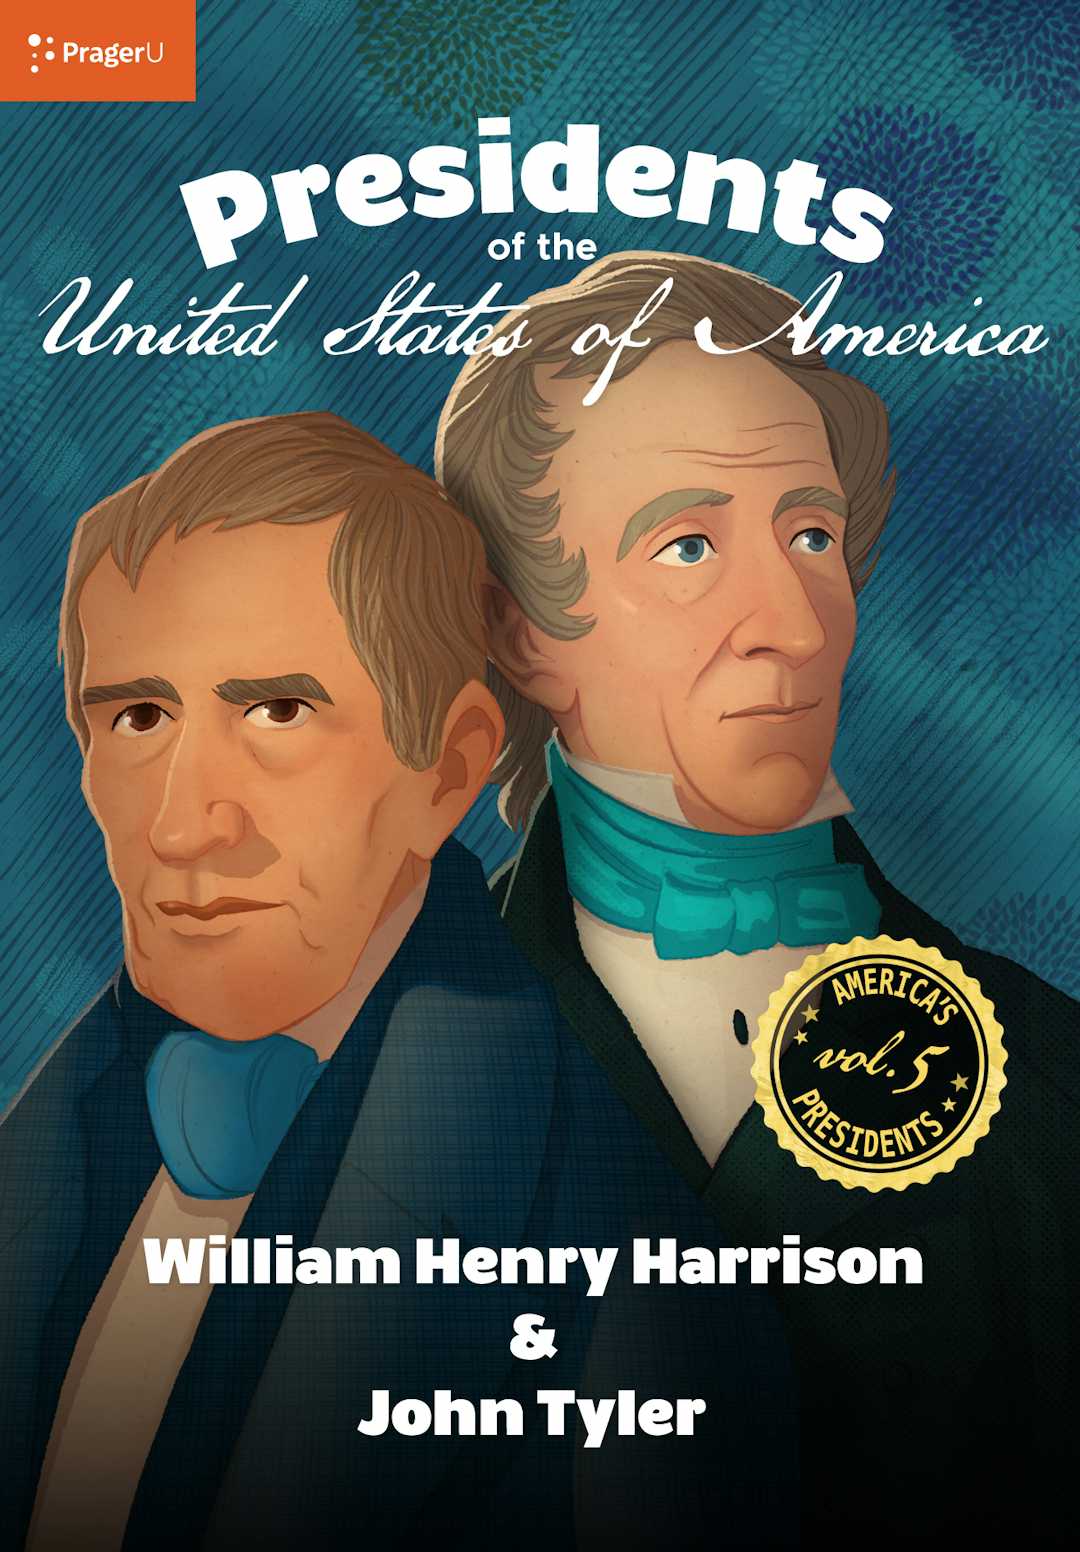 U.S. Presidents Volume 5: William Henry Harrison & John Tyler 